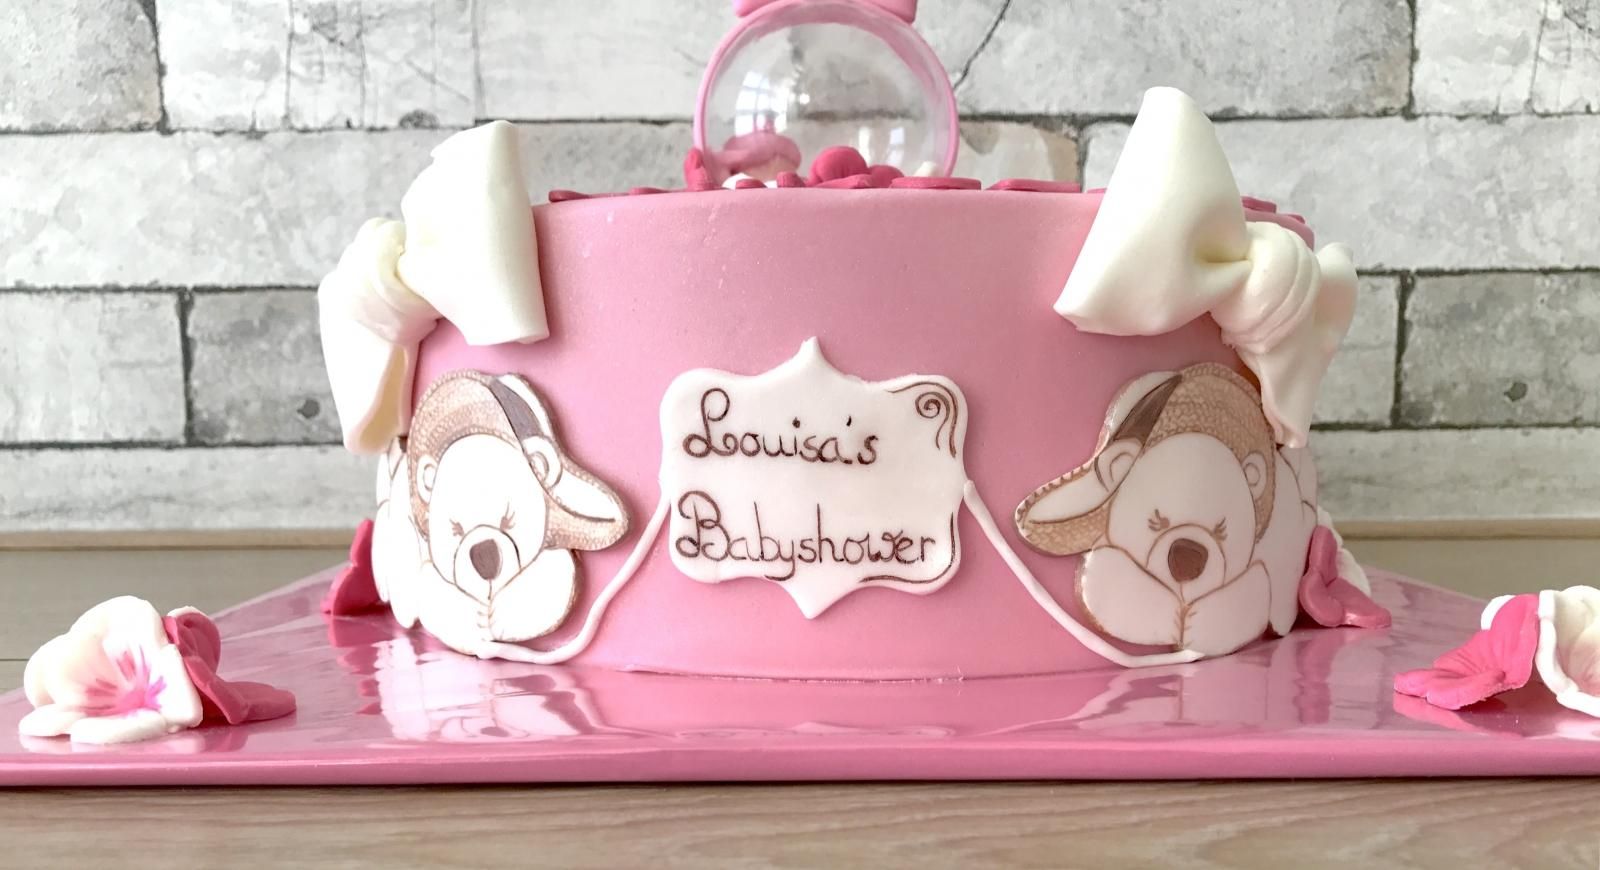 special made babyshoweer cake